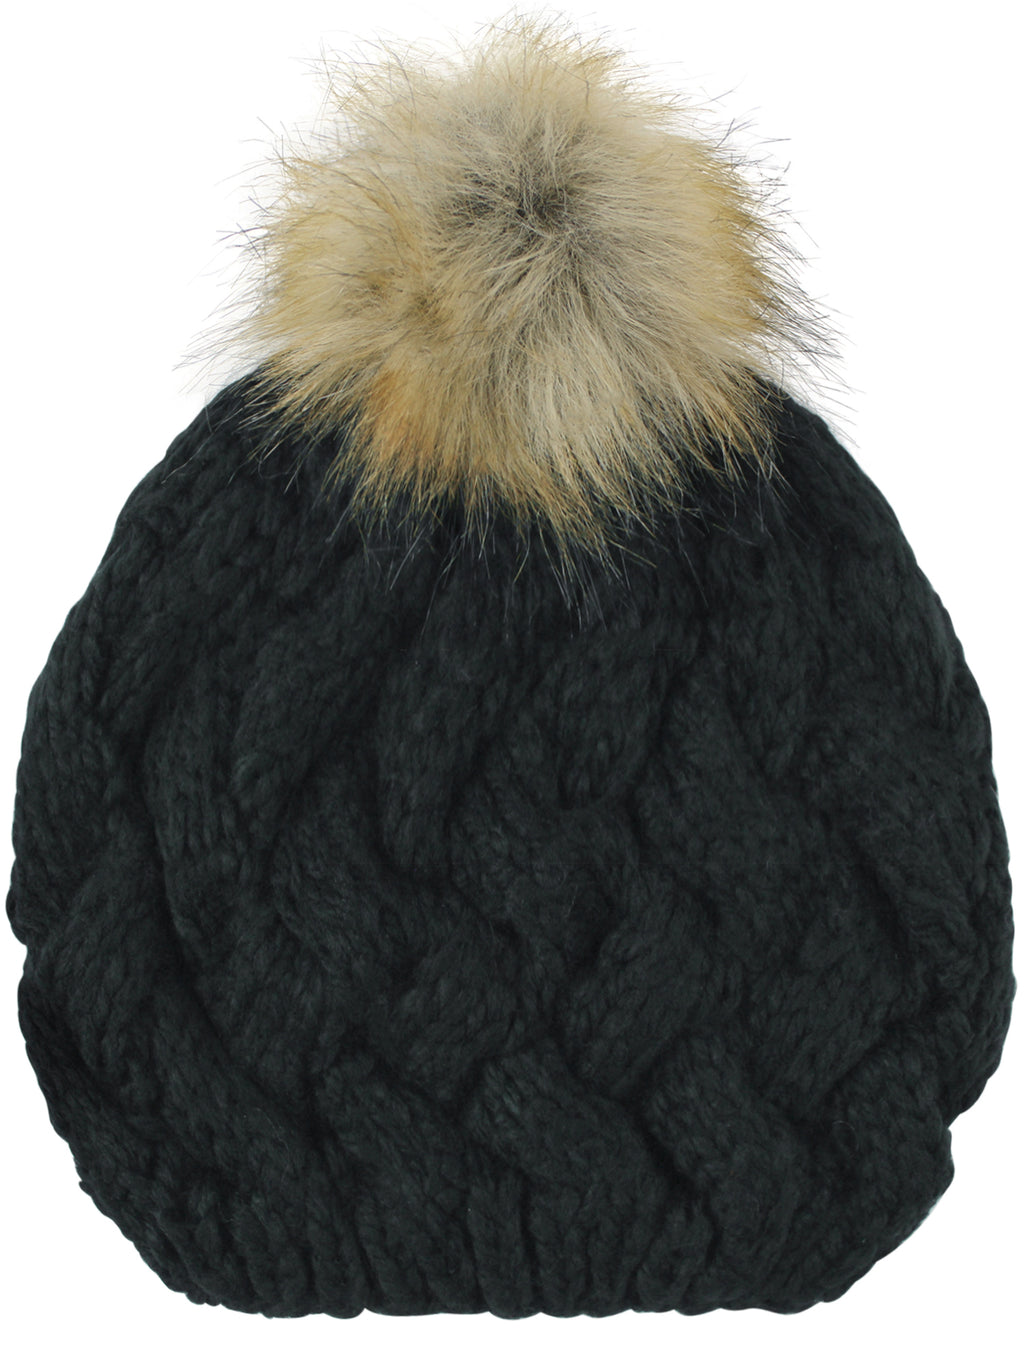 Black Knit Beret Beanie Hat With Fur Pom Pom